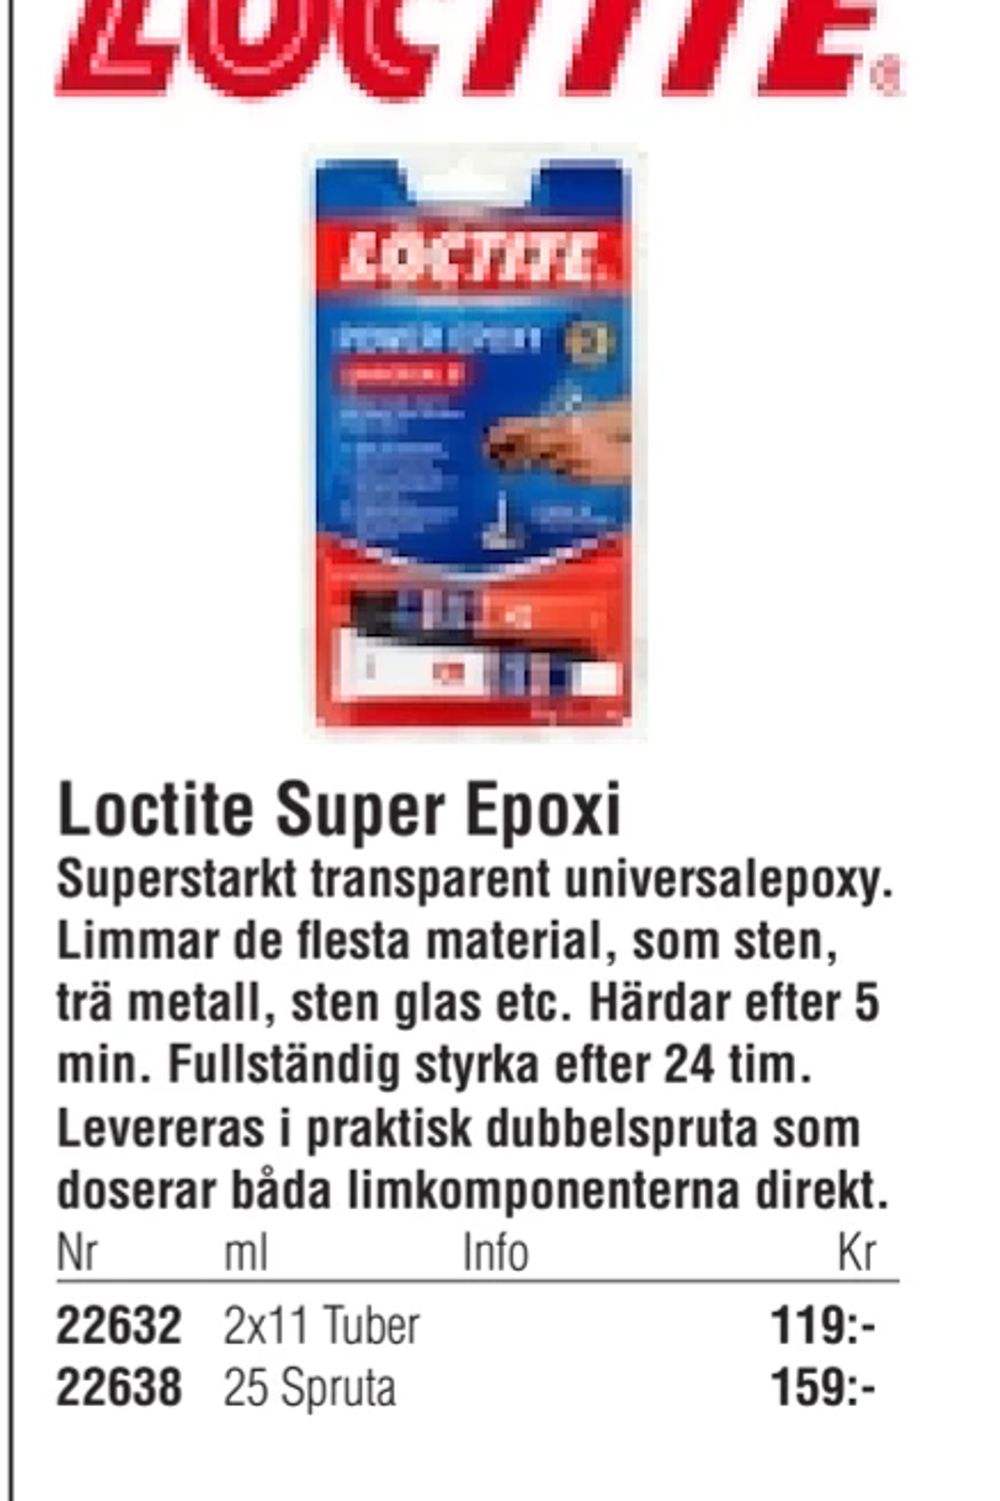 Erbjudanden på Loctite Super Epoxi från Erlandsons Brygga för 119 kr